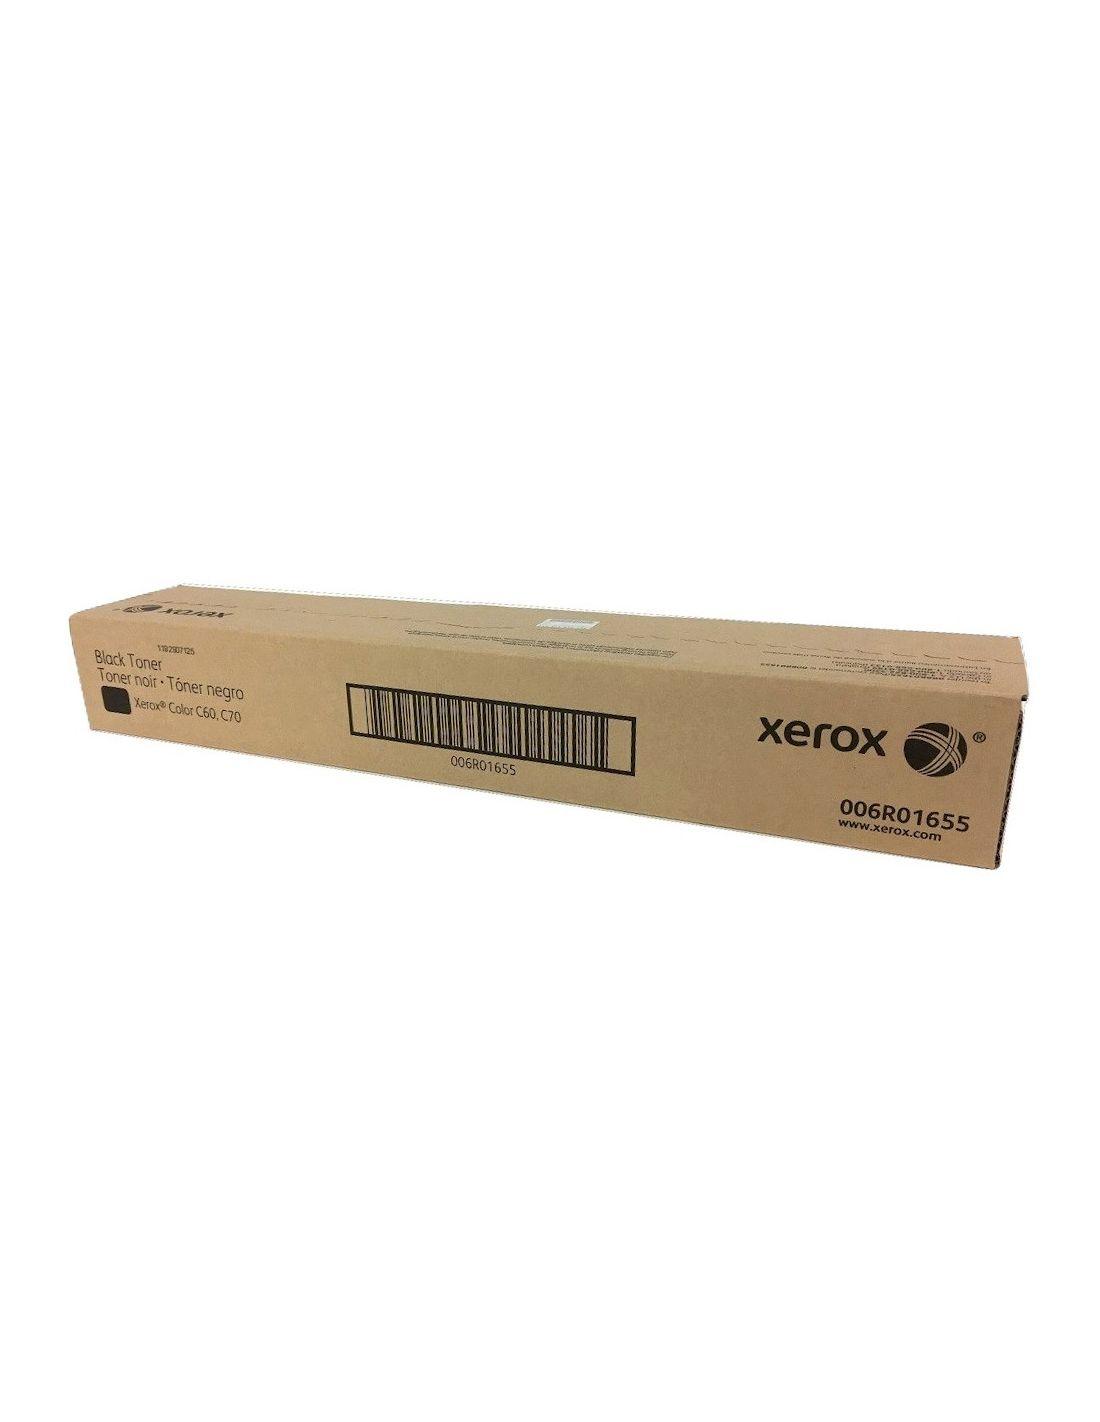 Xerox Color C60/C70 Negro Cartucho de Toner Original - 006R01655 - Rendimiento 30.000 Páginas.